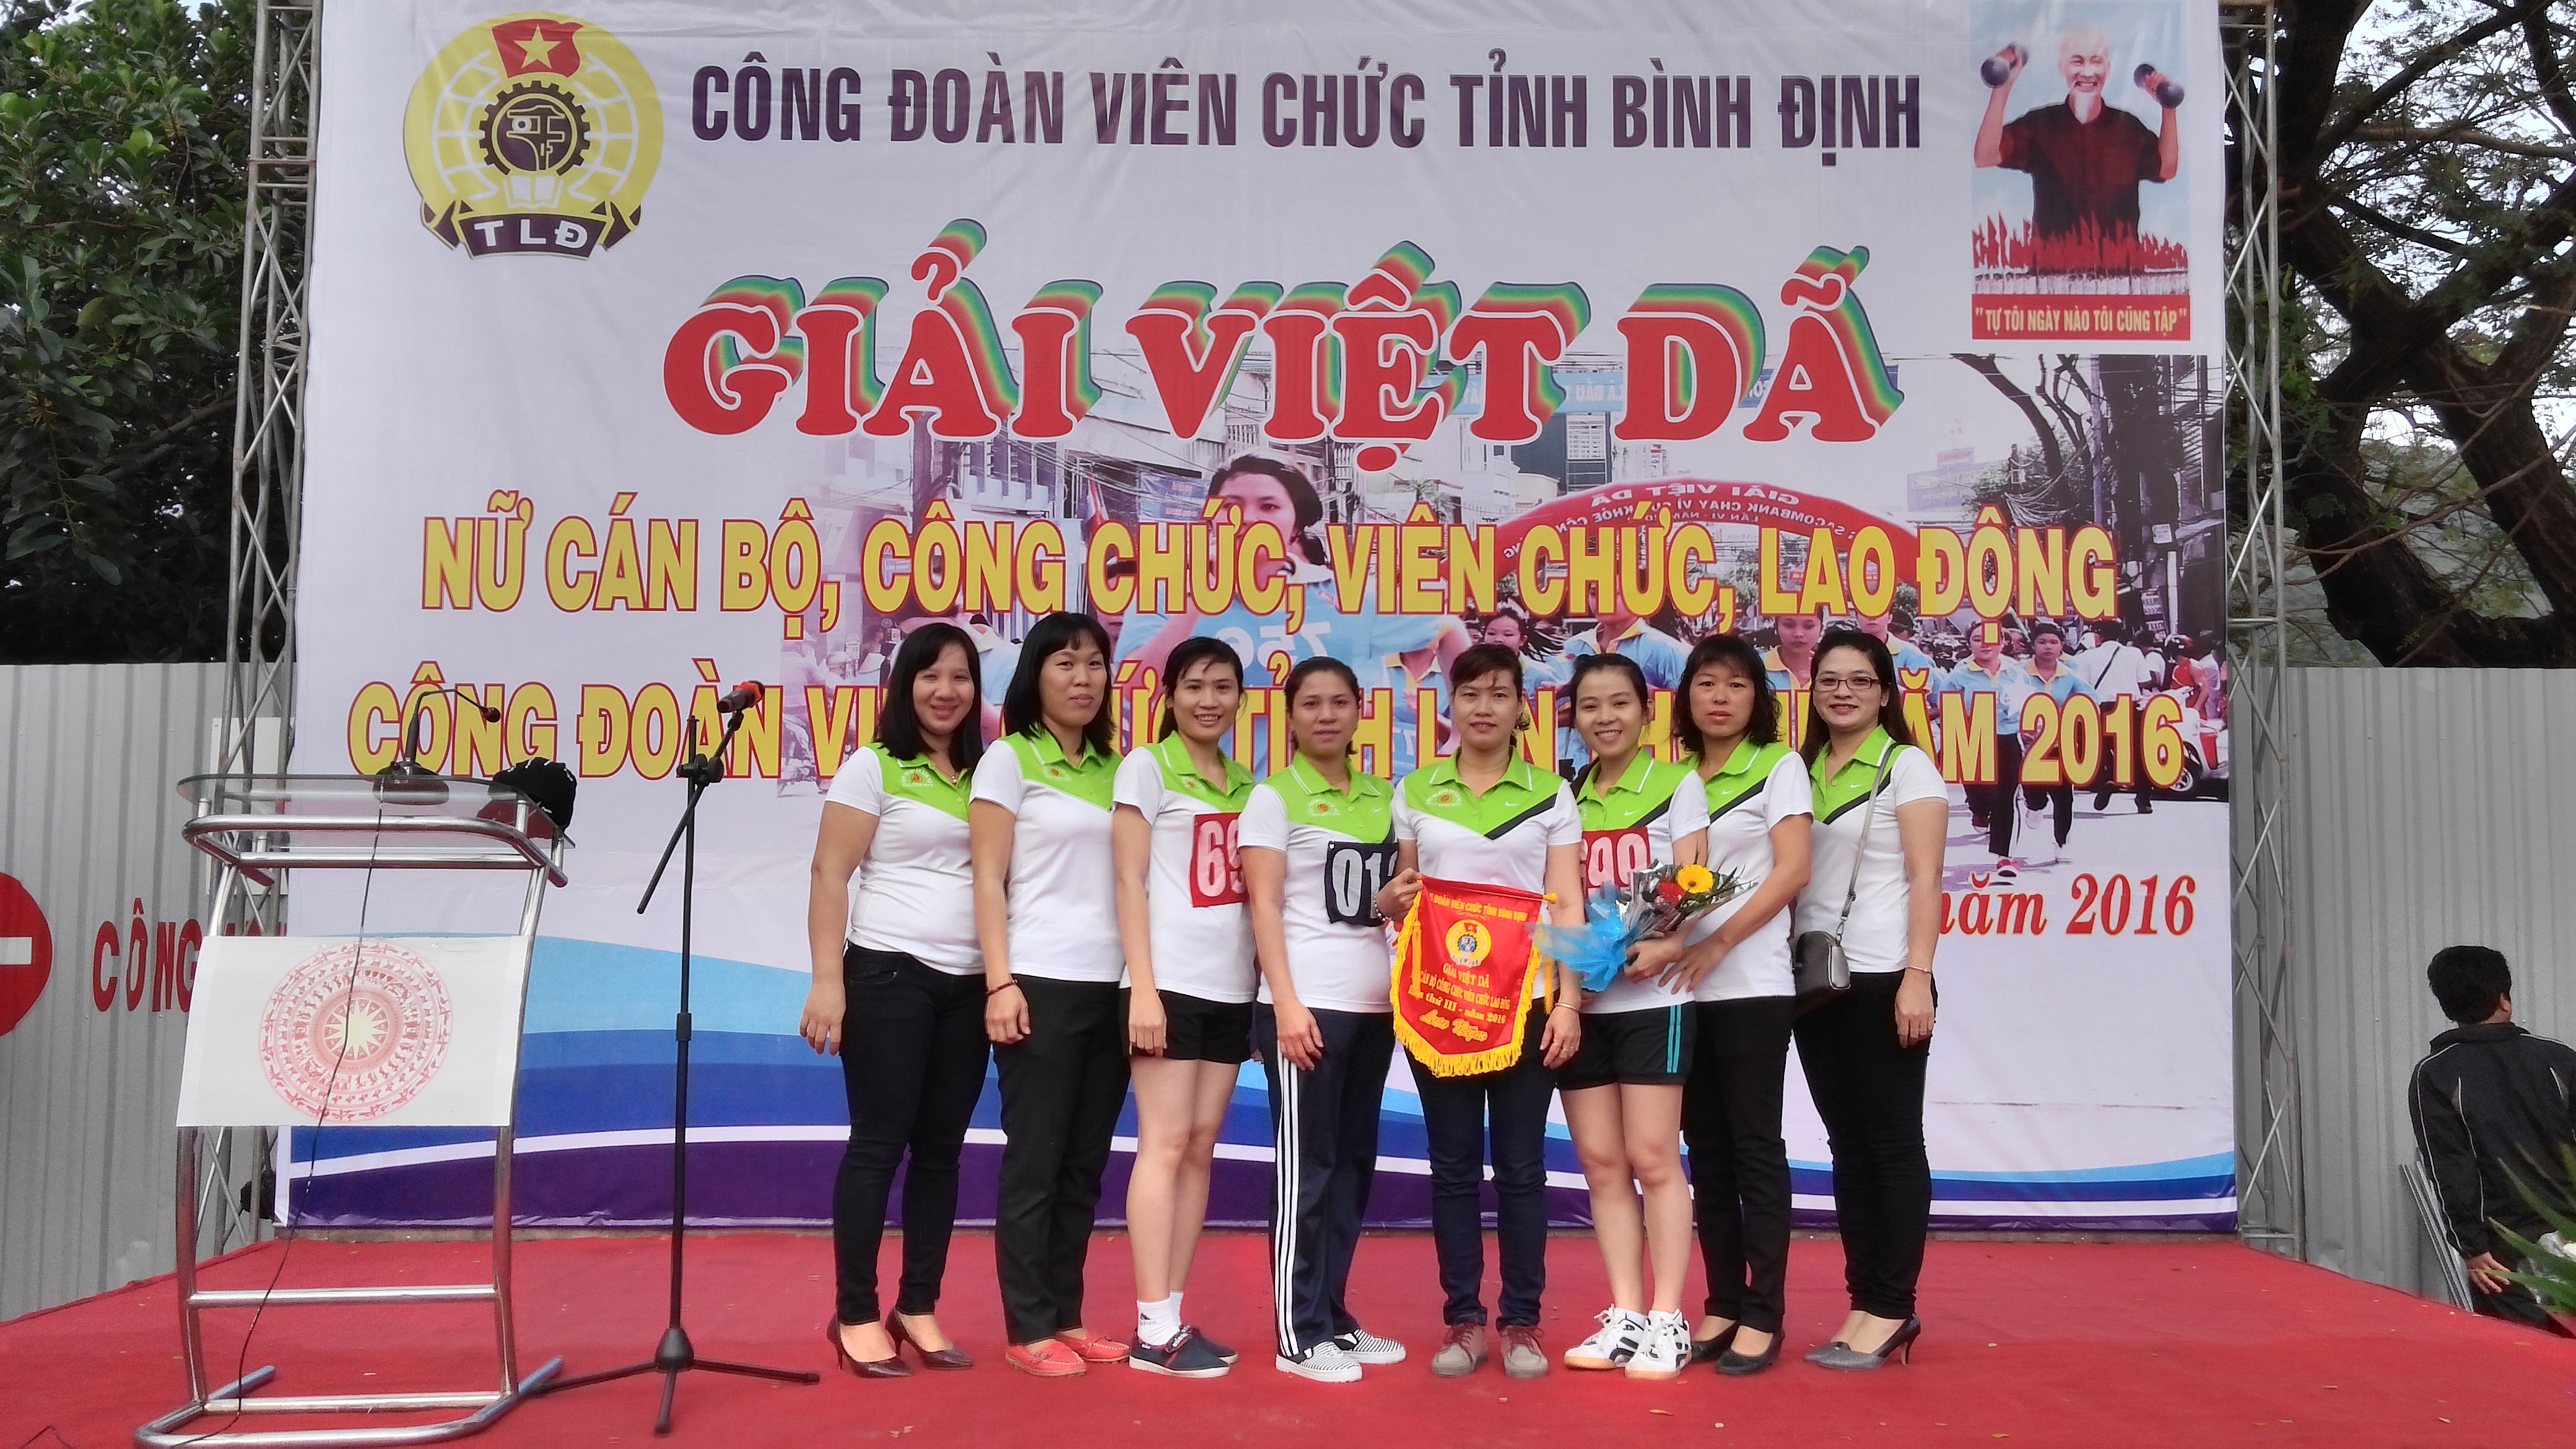 Nữ đoàn viên Công đoàn cơ sở Cục THADS tỉnh Bình Định tham gia giải Việt dã truyền thống lần thứ III - Năm 2016